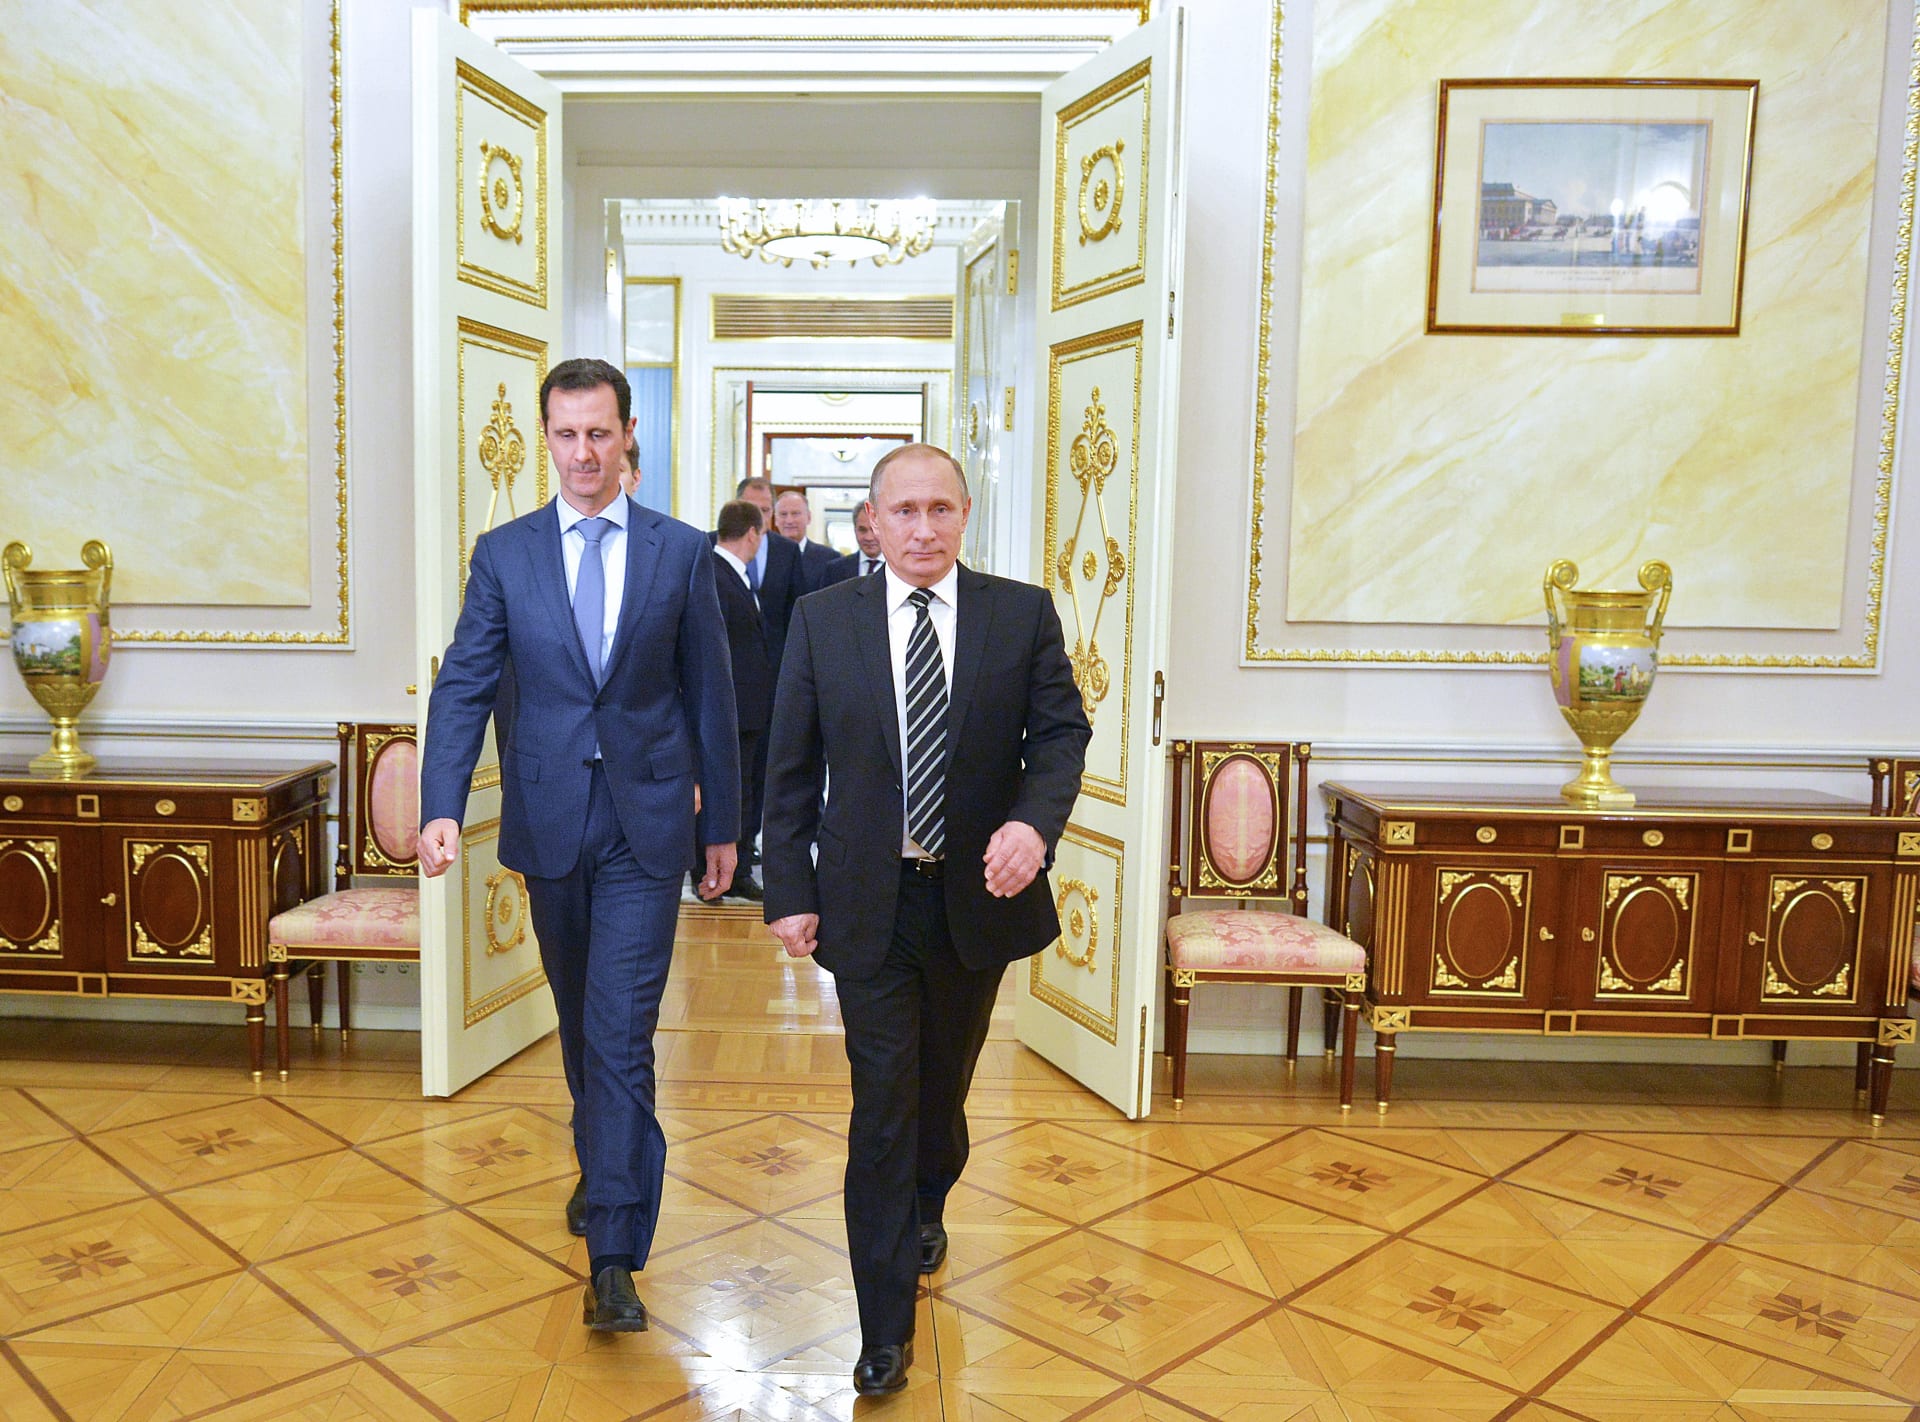 هيلي: الأسد مستمر بجرائمه لثقته بحماية روسيا له.. وعلى مجلس الأمن الضغط على موسكو لإنهاء الحرب السورية 